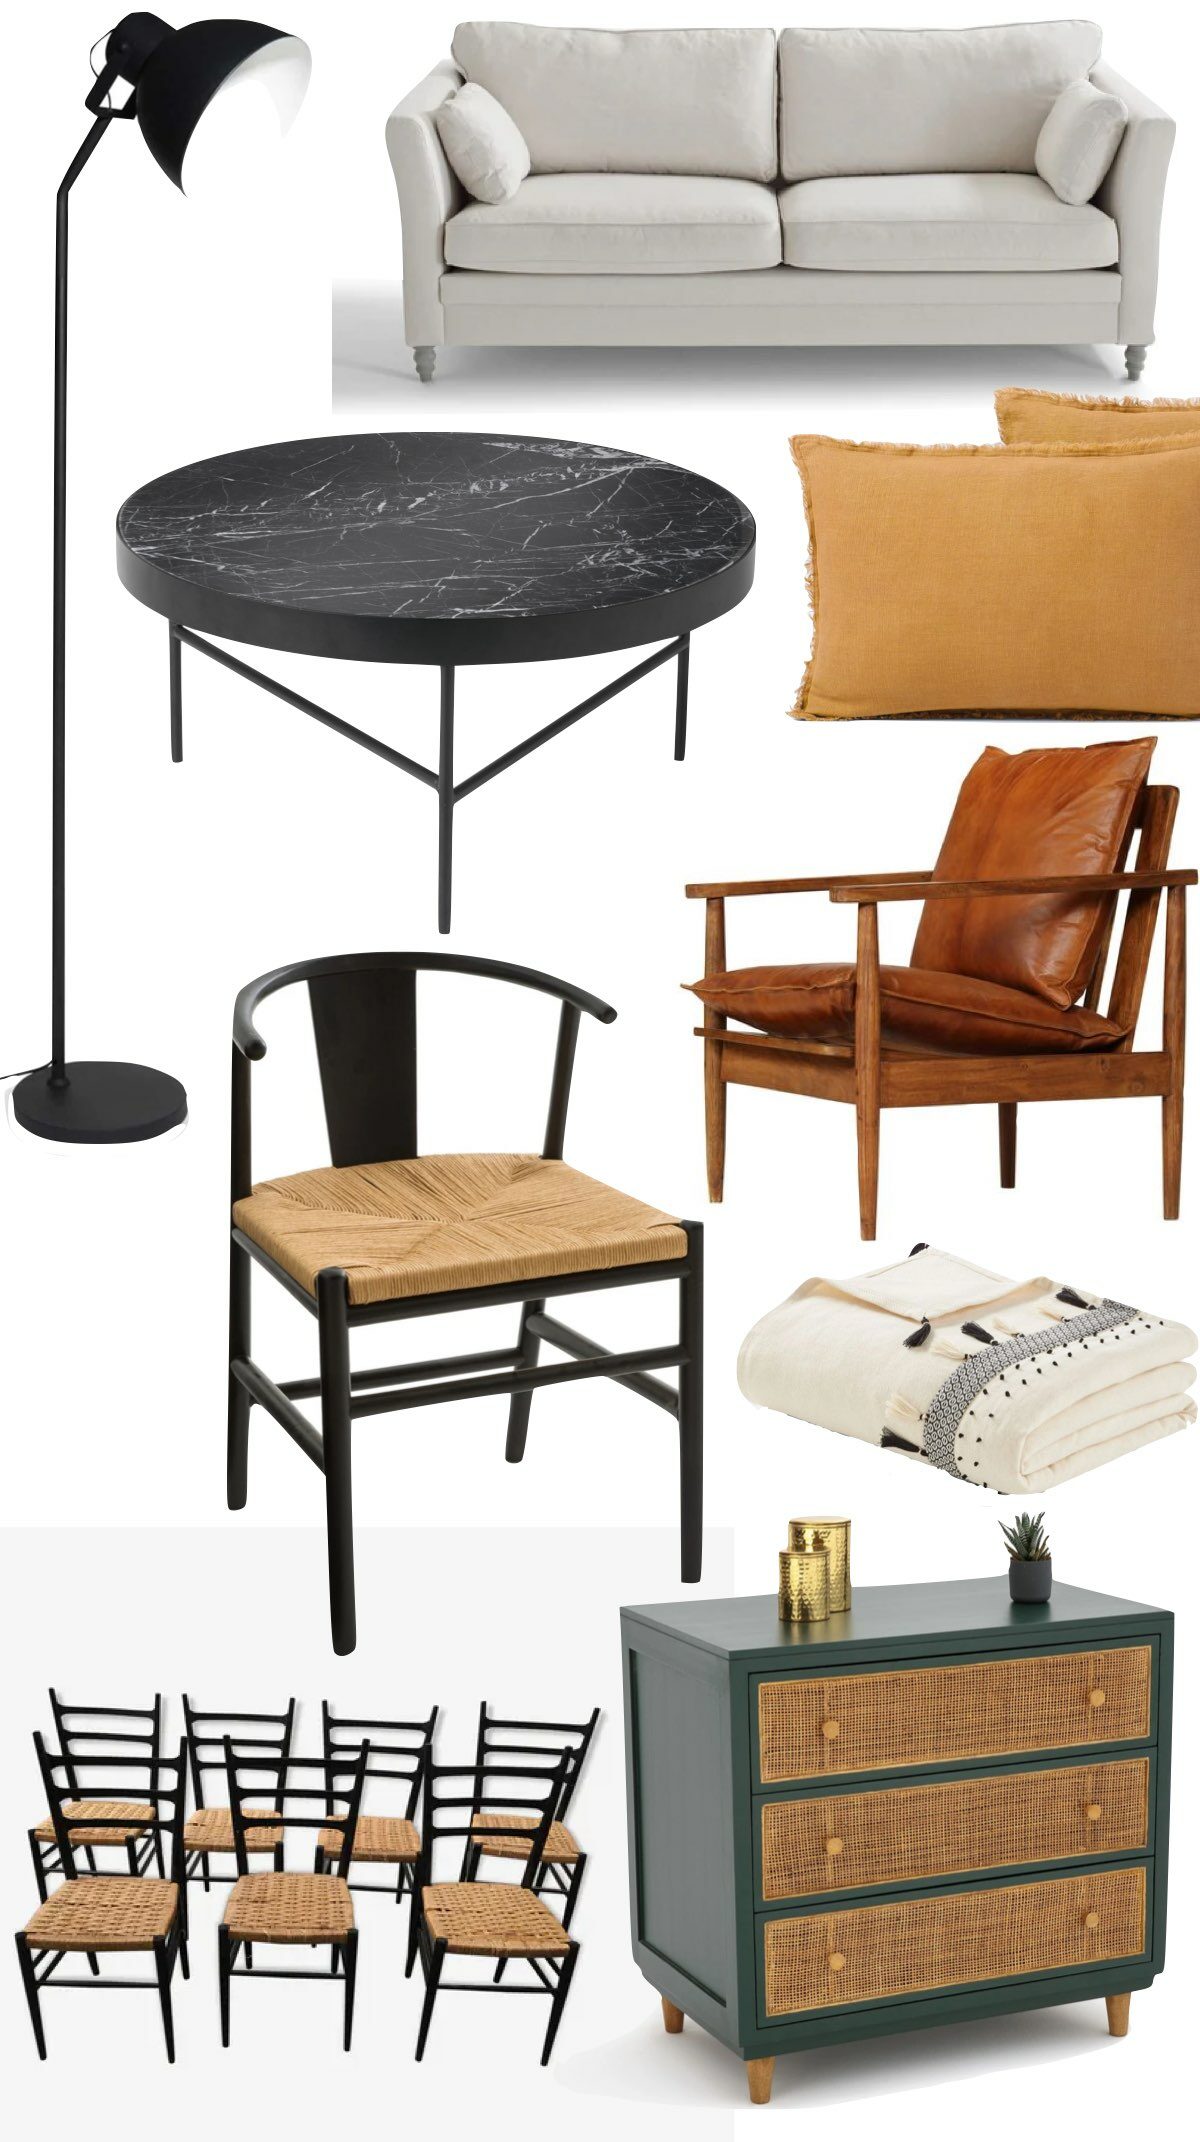 idée décoration salon canapé écru coussin lin ocre commode verte cannage chaise noir bois